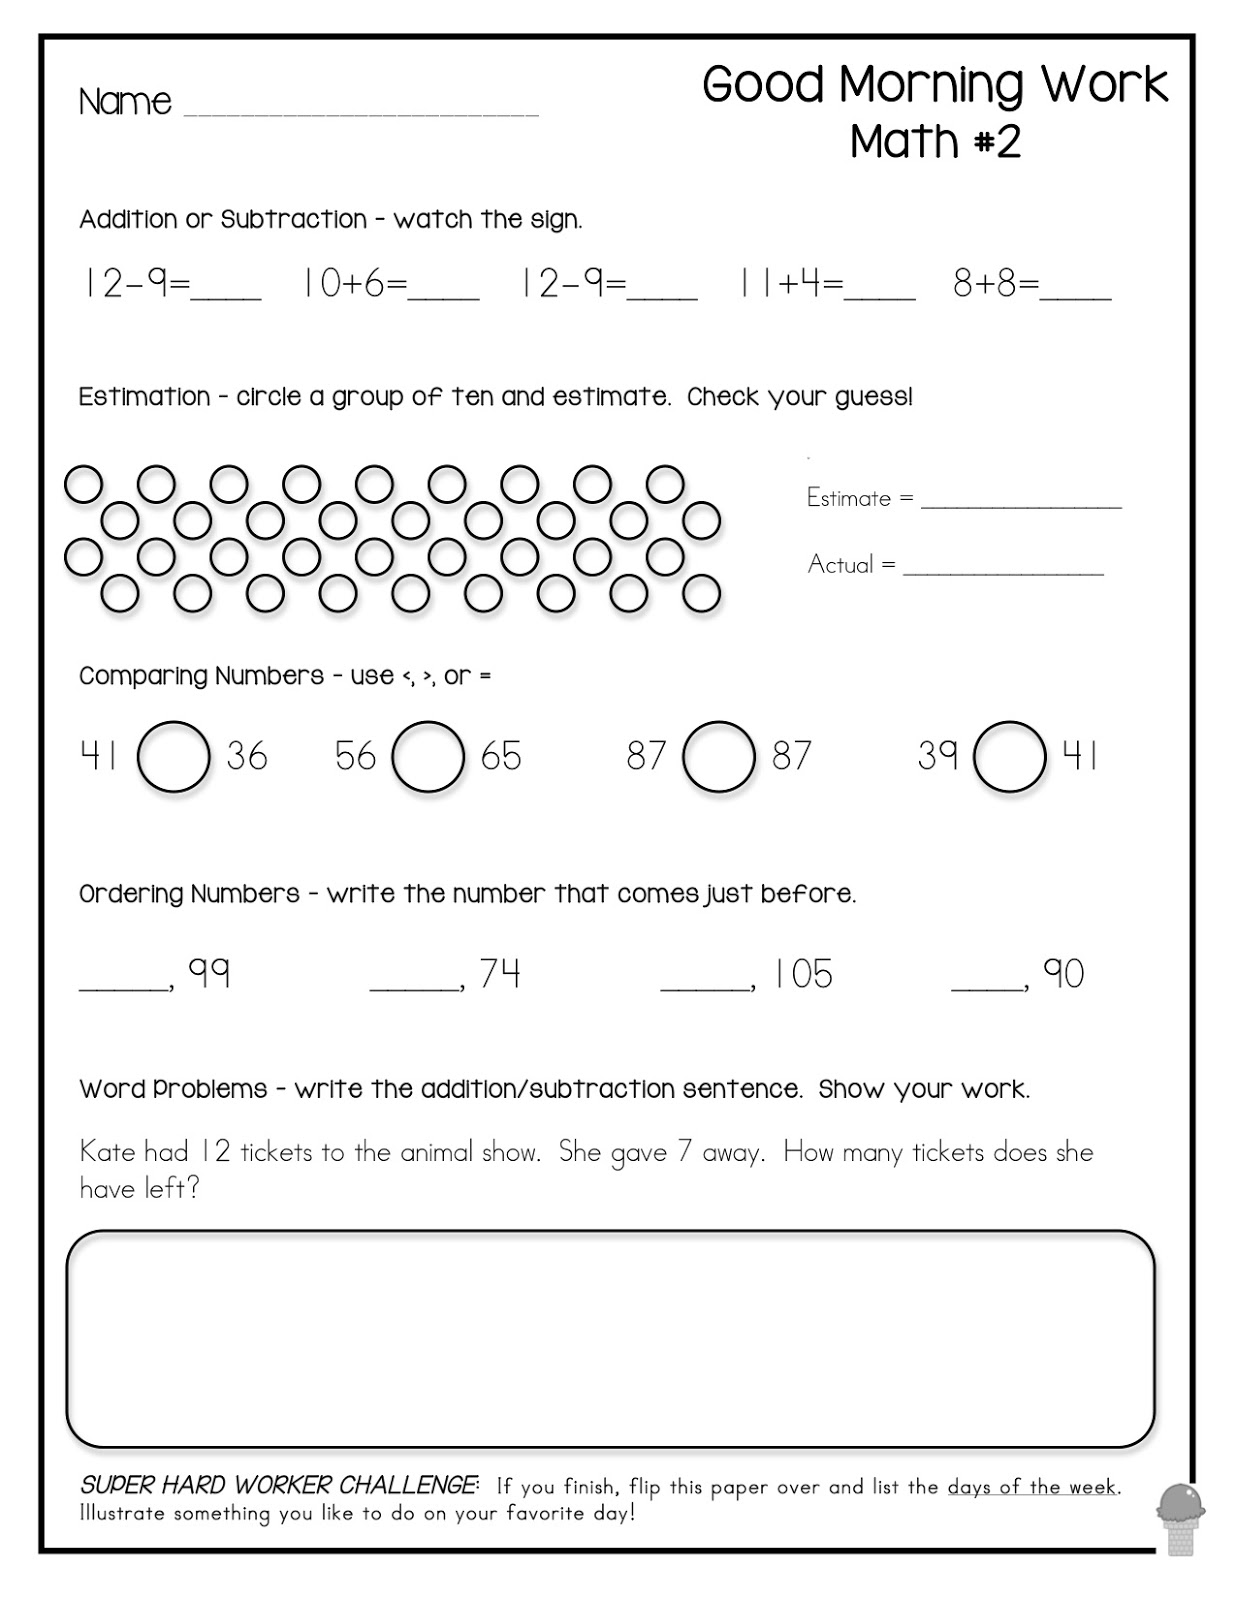 2nd Grade Morning Work Worksheets Image